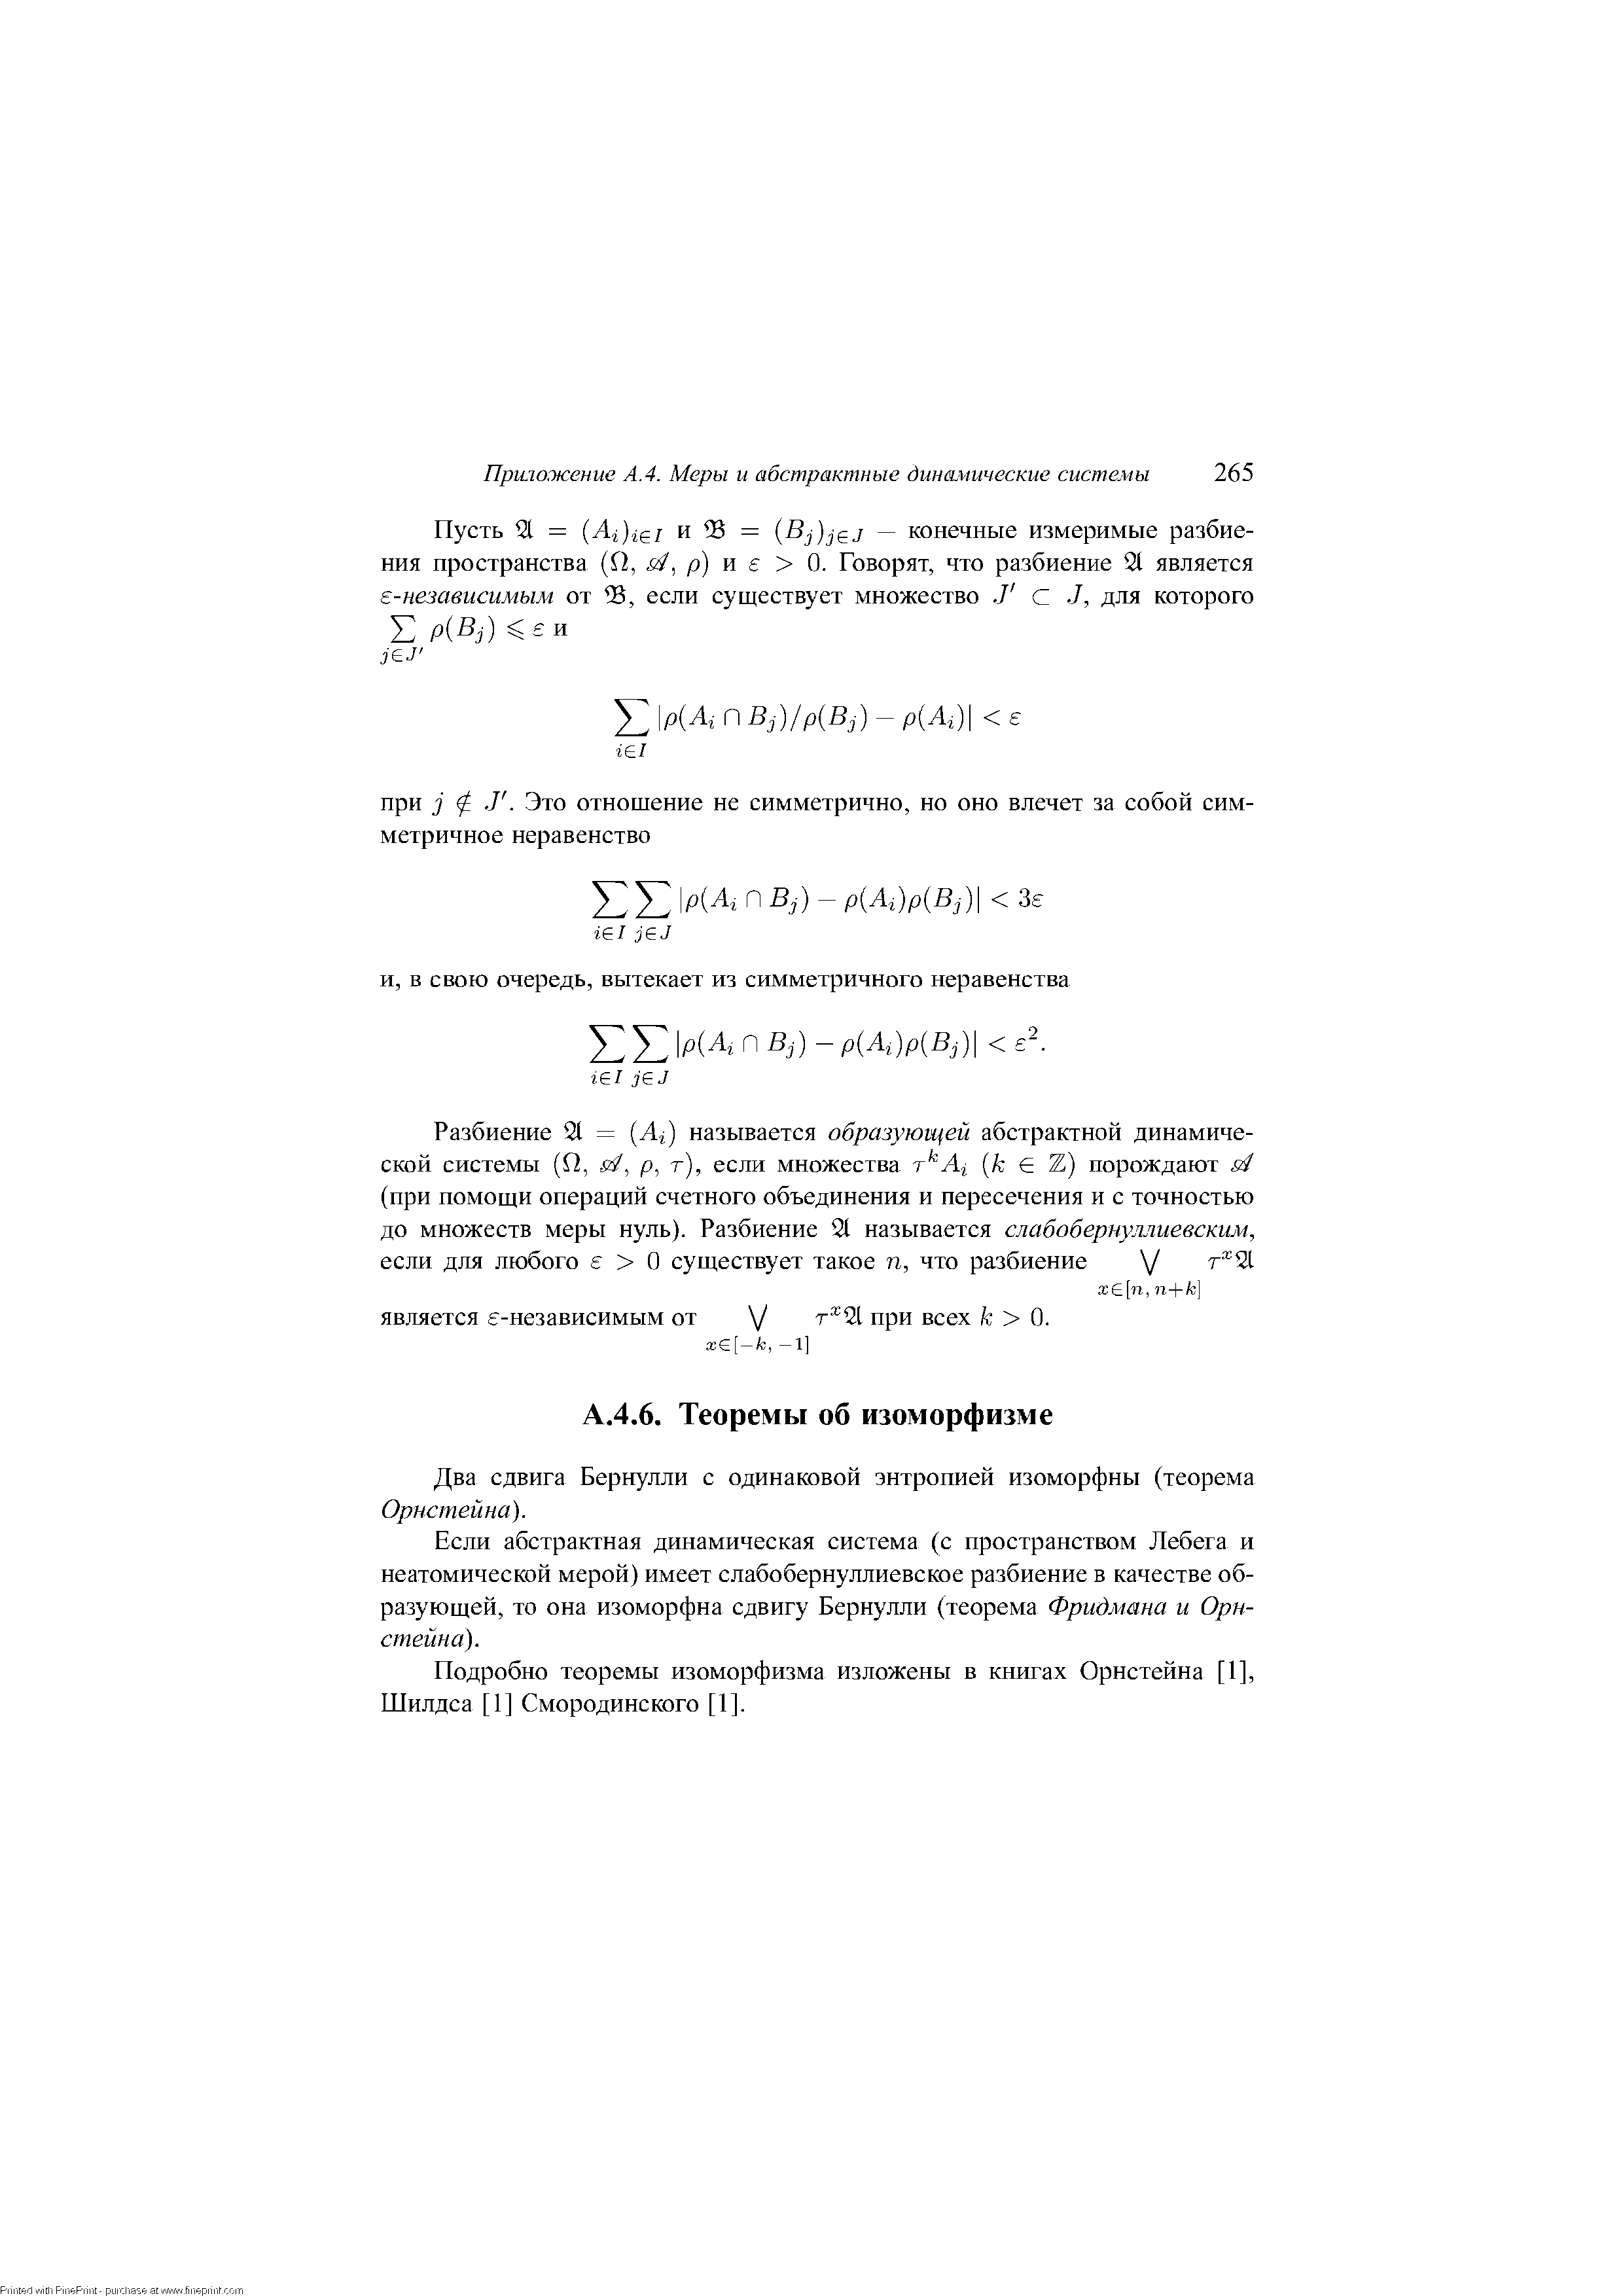 Два сдвига Бернулли с одинаковой энтропией изоморфны (теорема Орнстейна).